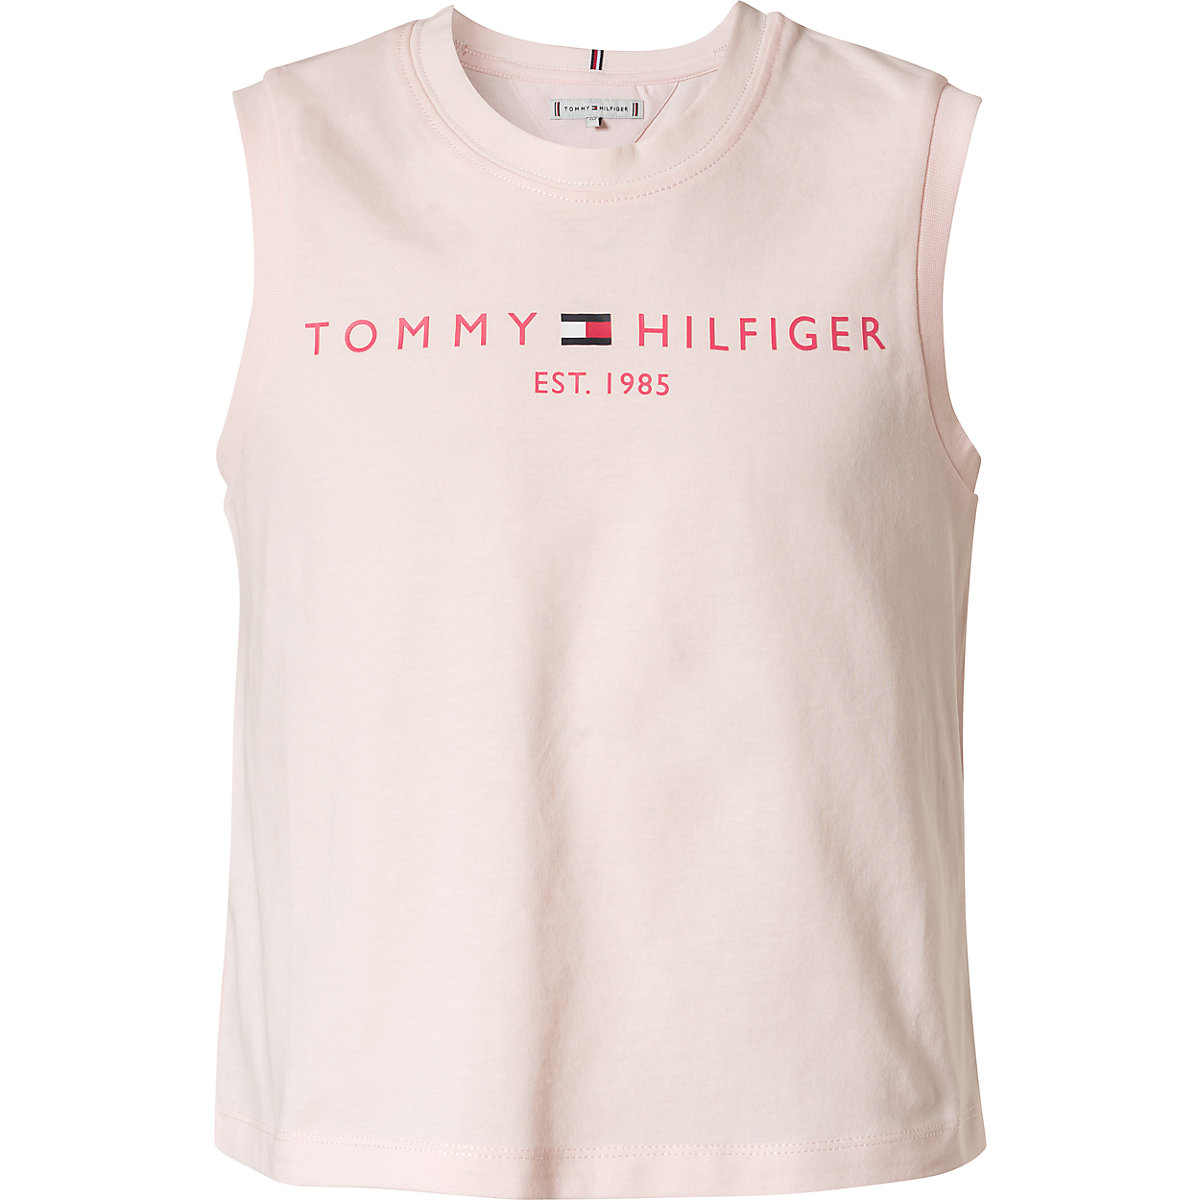 TOMMY HILFIGER Top für Mädchen pink